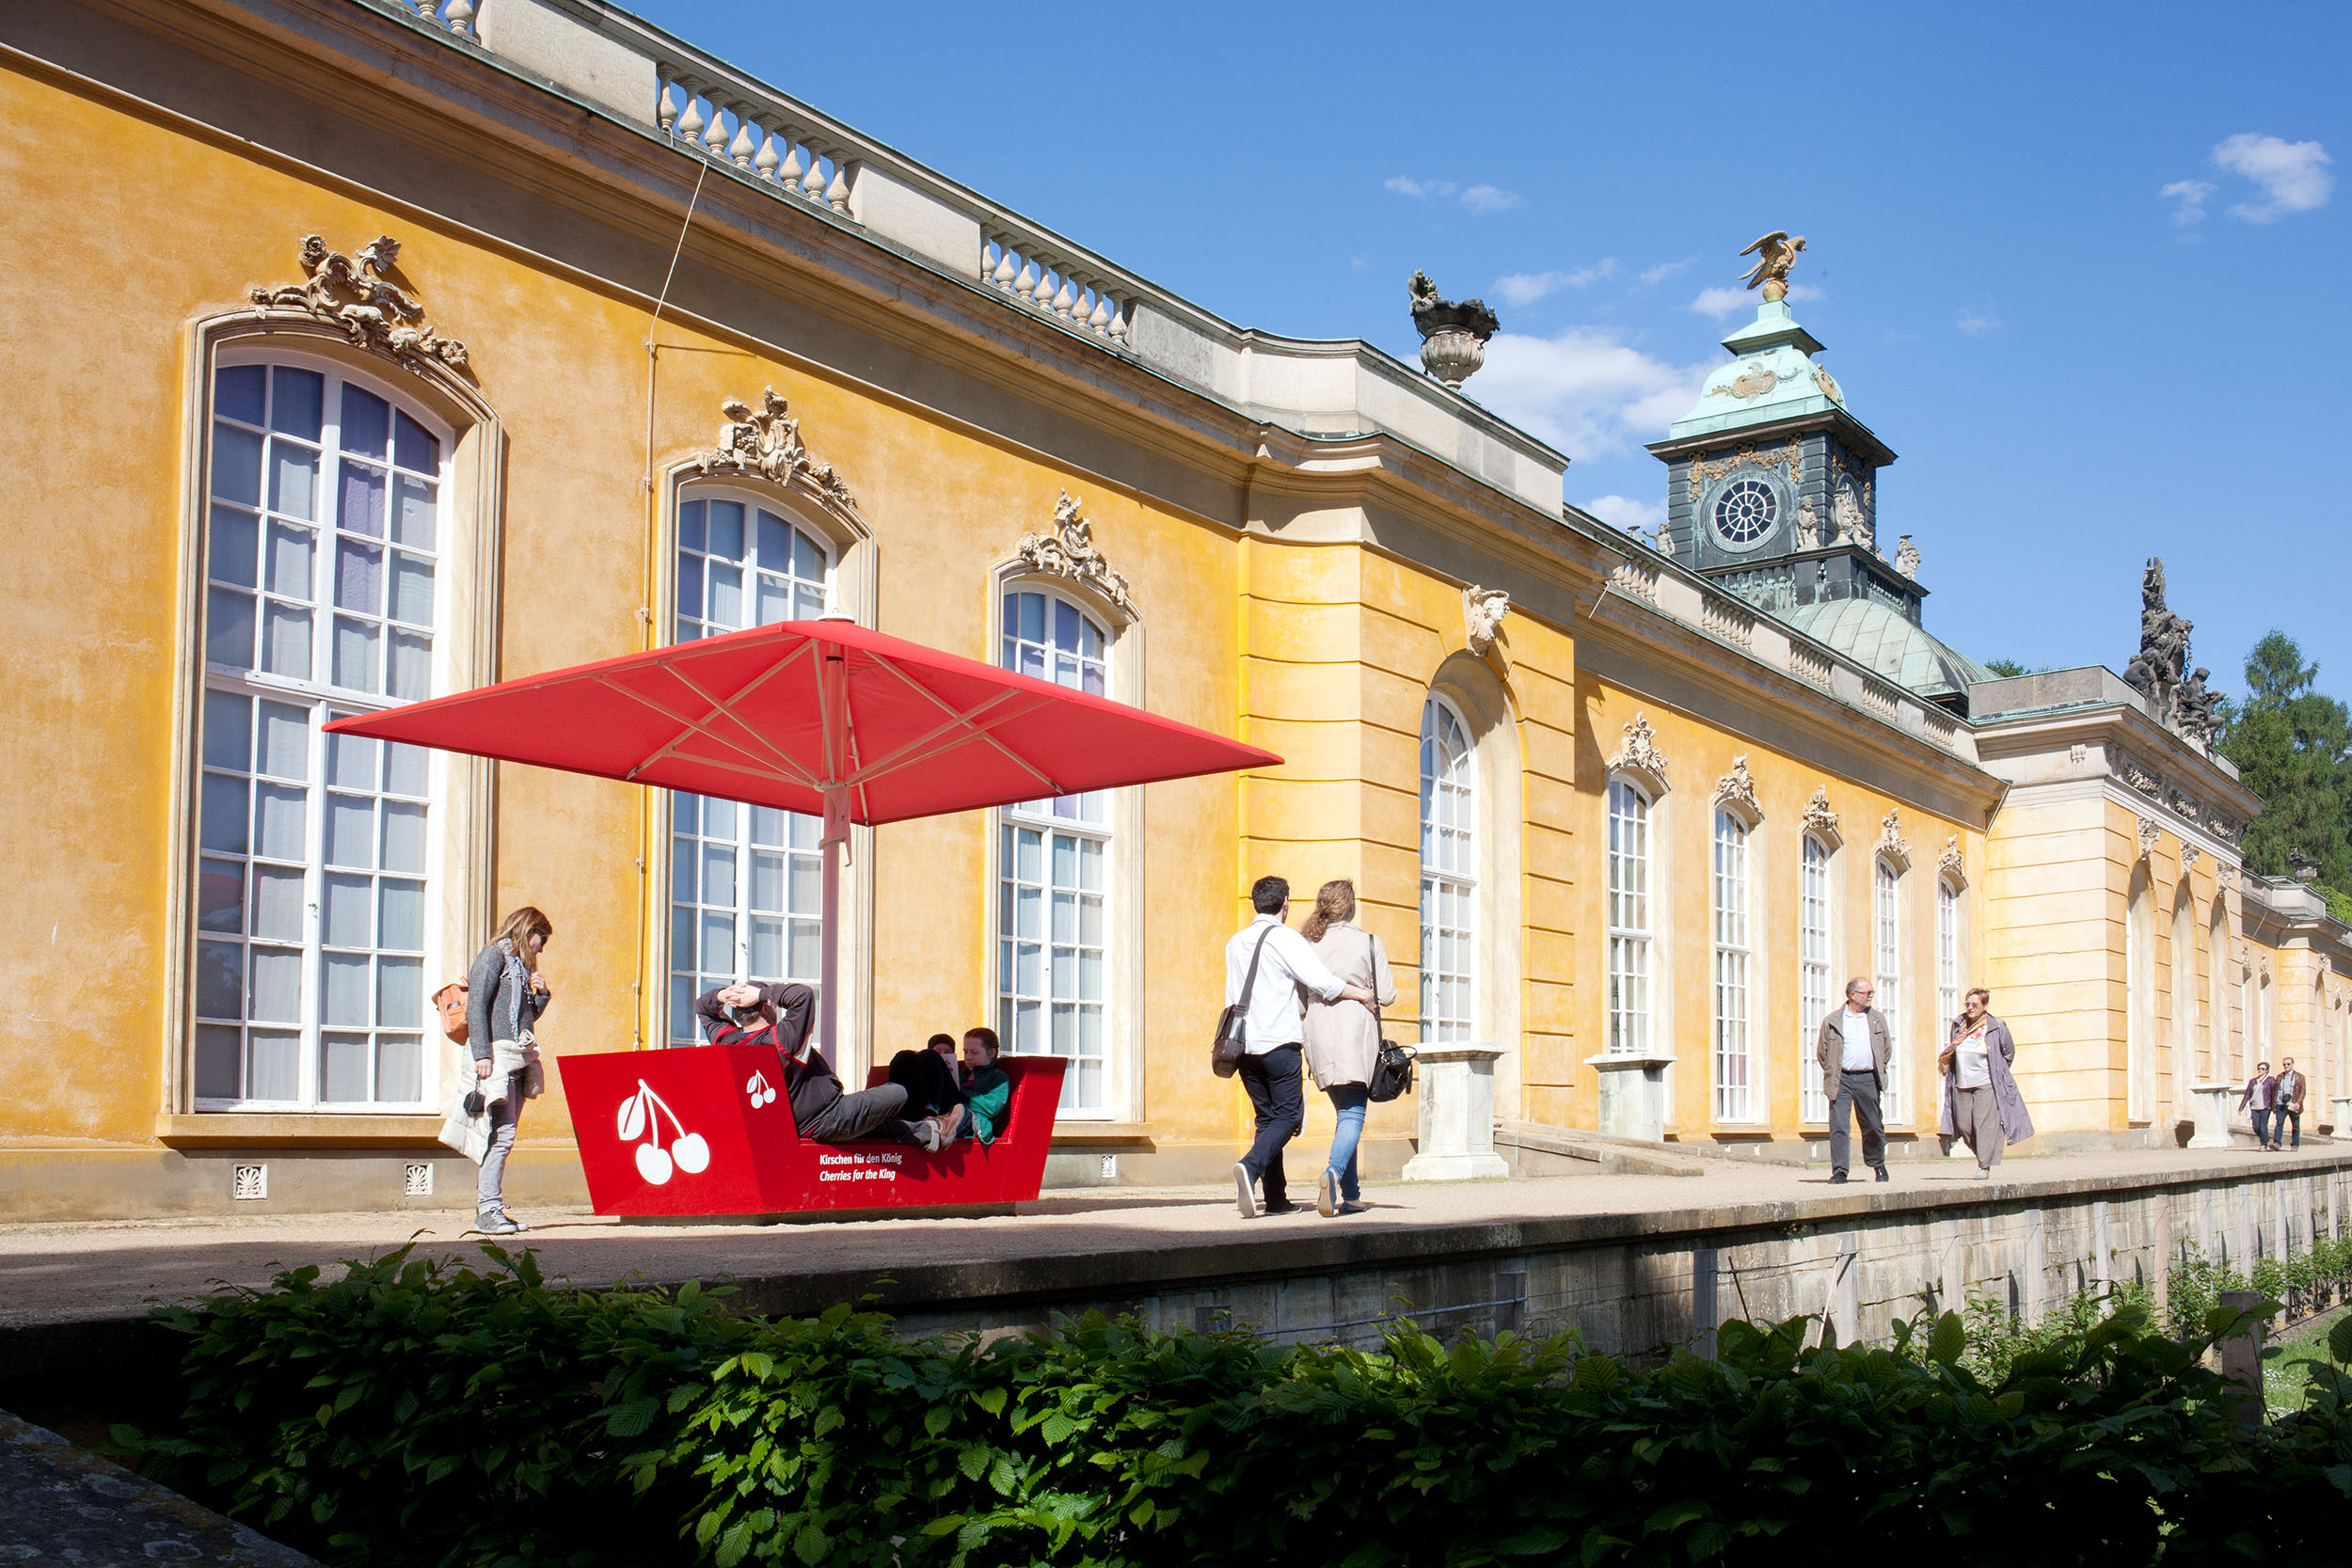 Vor dem Schloss Sanssouci: Eine rote Informationsstation der Outdoorausstellung Paradiesapfel, die gleichzeitig Sitzgelegenheit inklusive Sonnenschirm ist.